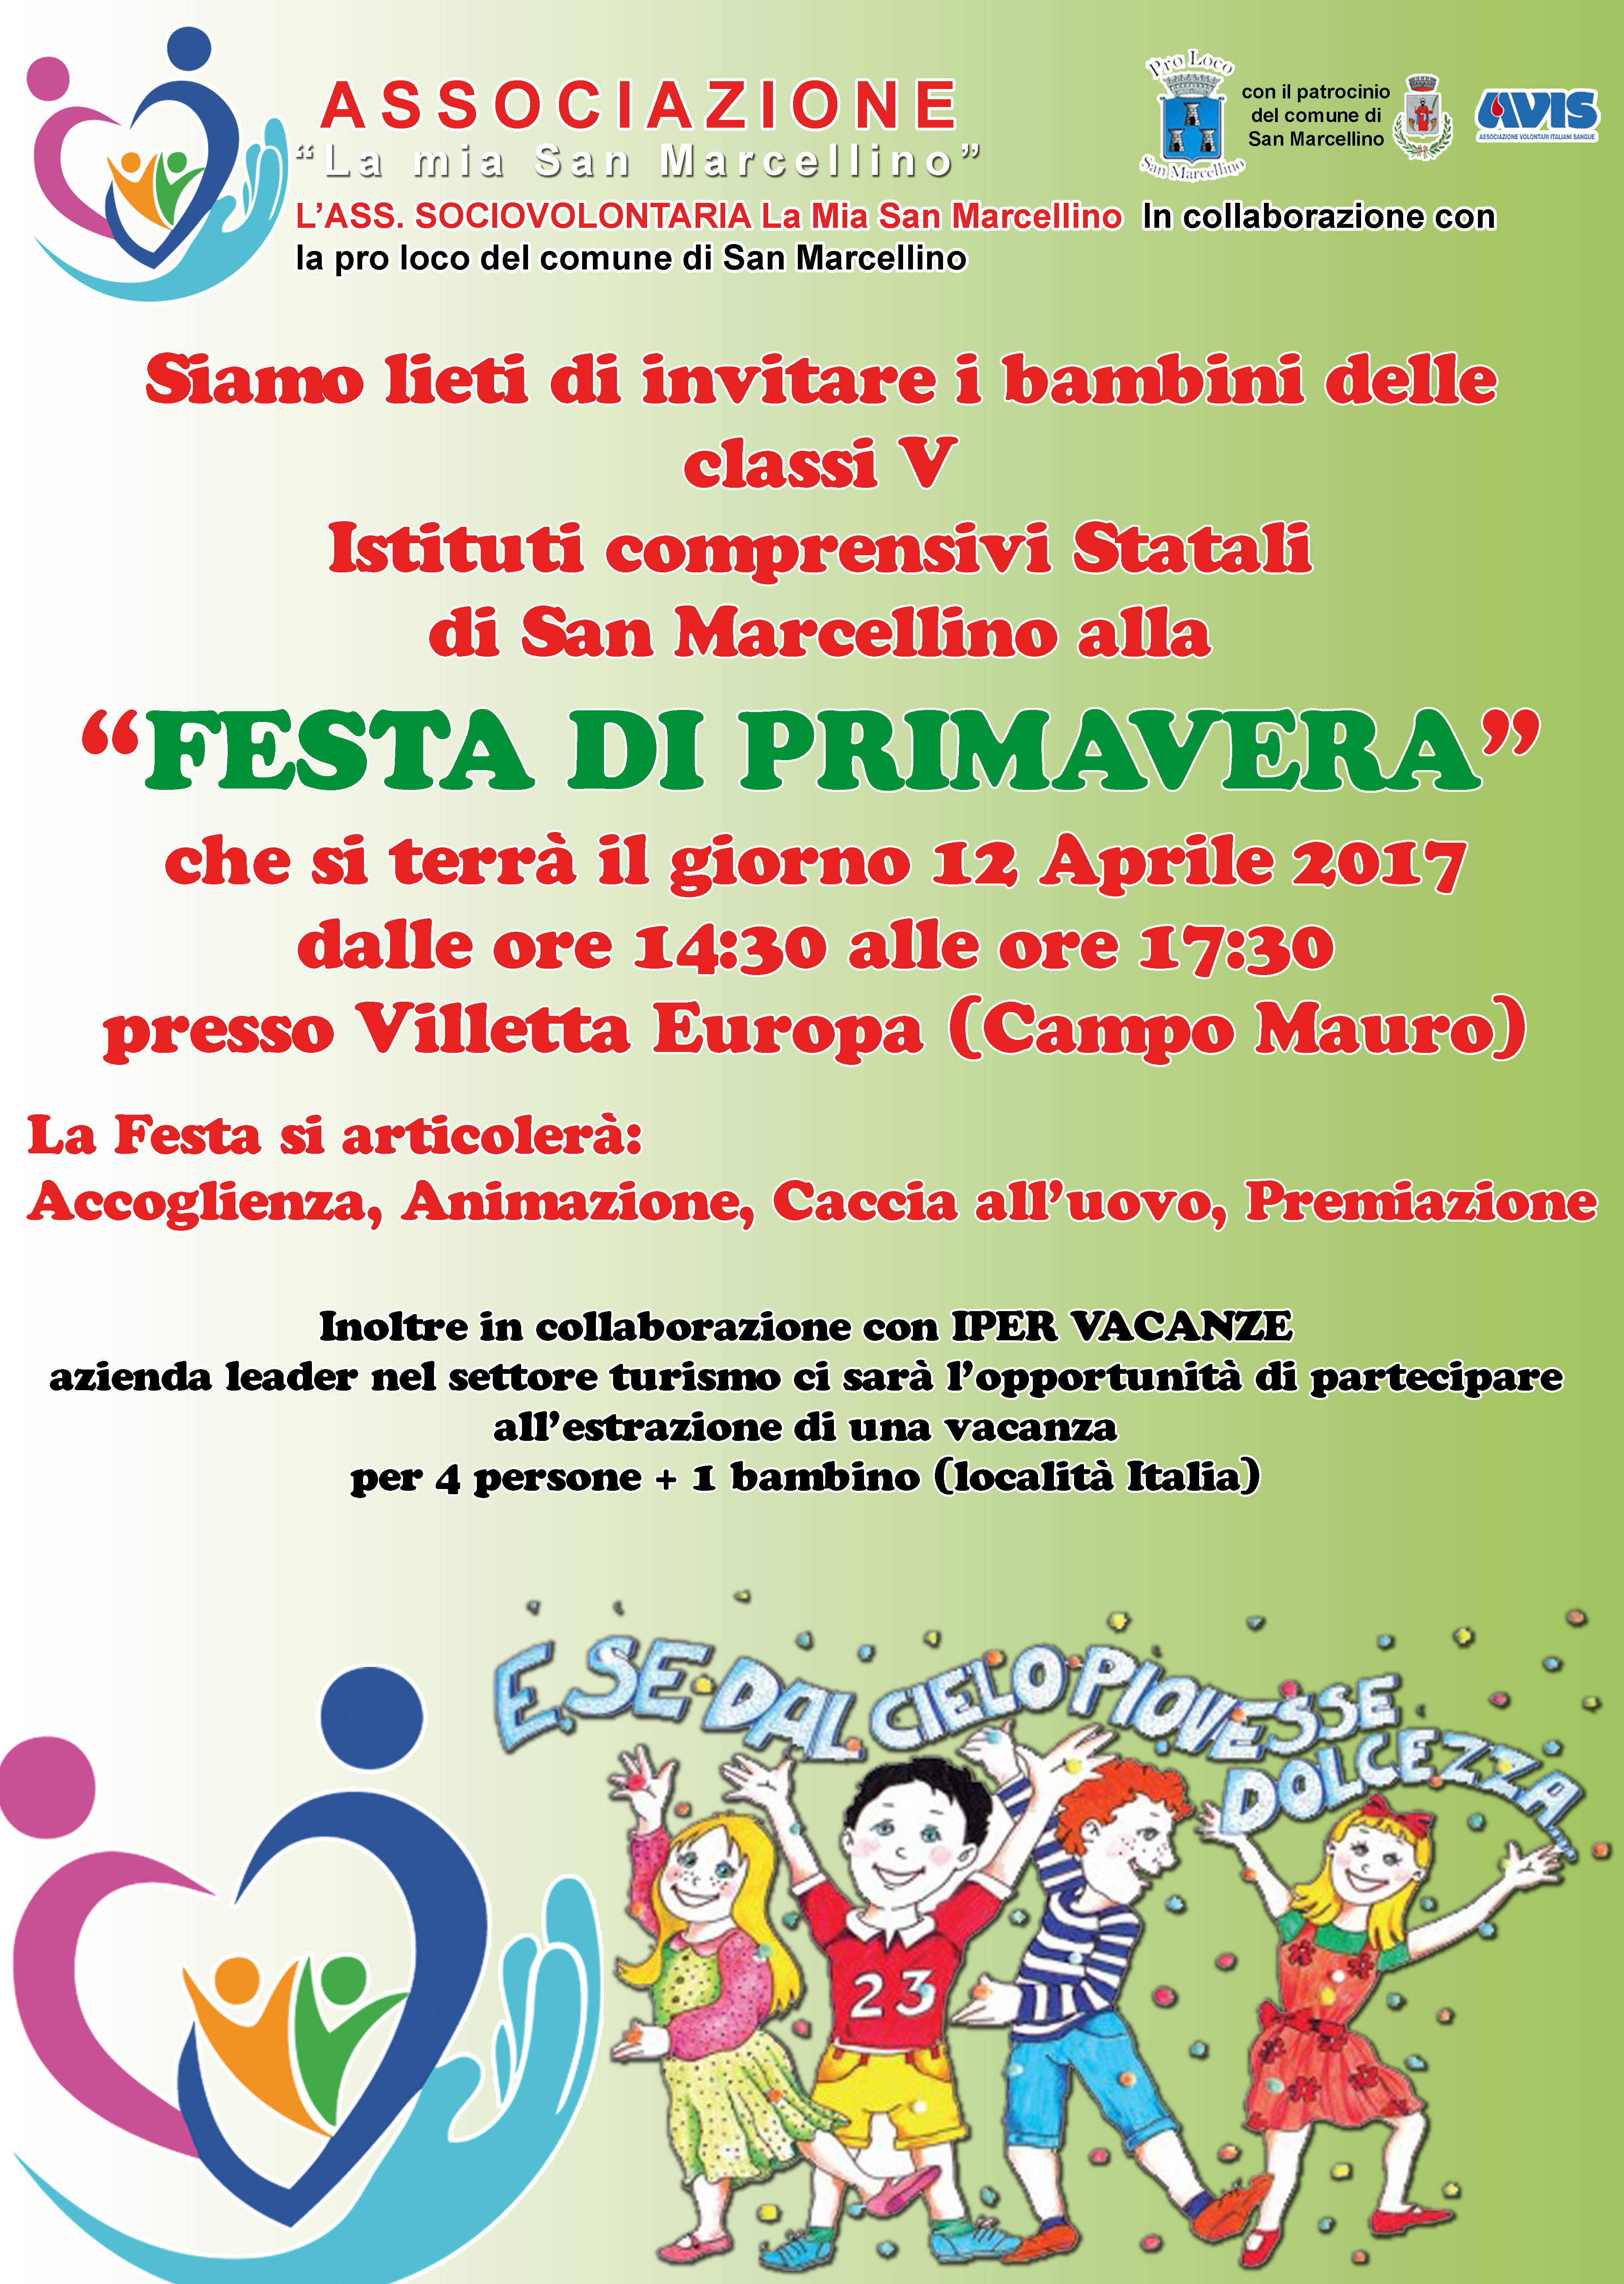  La Festa di primavera arriva a San Marcellino il 12 aprile in Villetta Europa